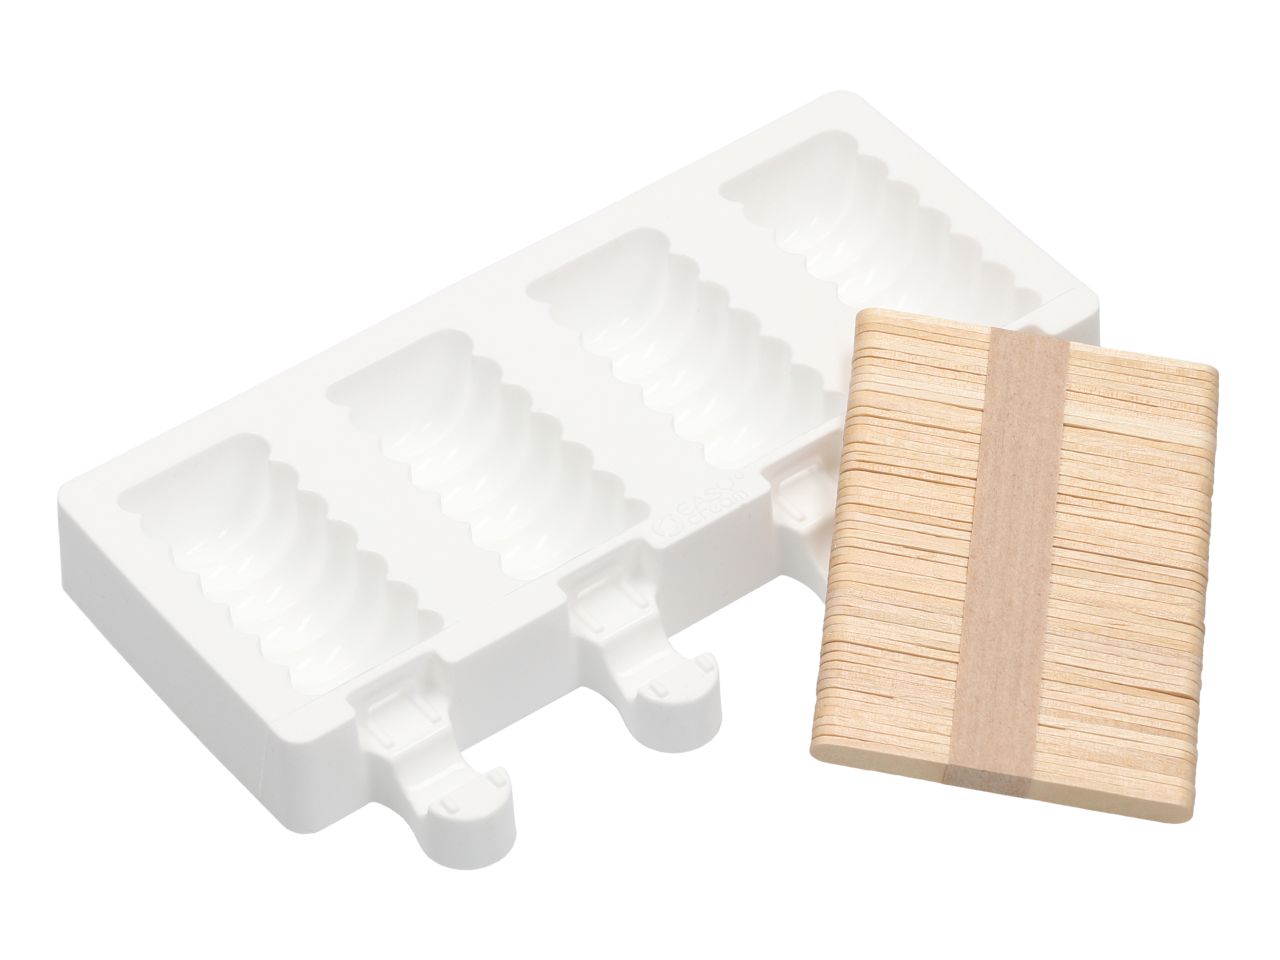 SILIKOMART Silikonform: Eisform Gel 04m Mini Tango, Weiß, 4 Mulden à 6,7 x 3,3 x 2,2 cm, je 36 ml, inkl. 50 Holzstiele